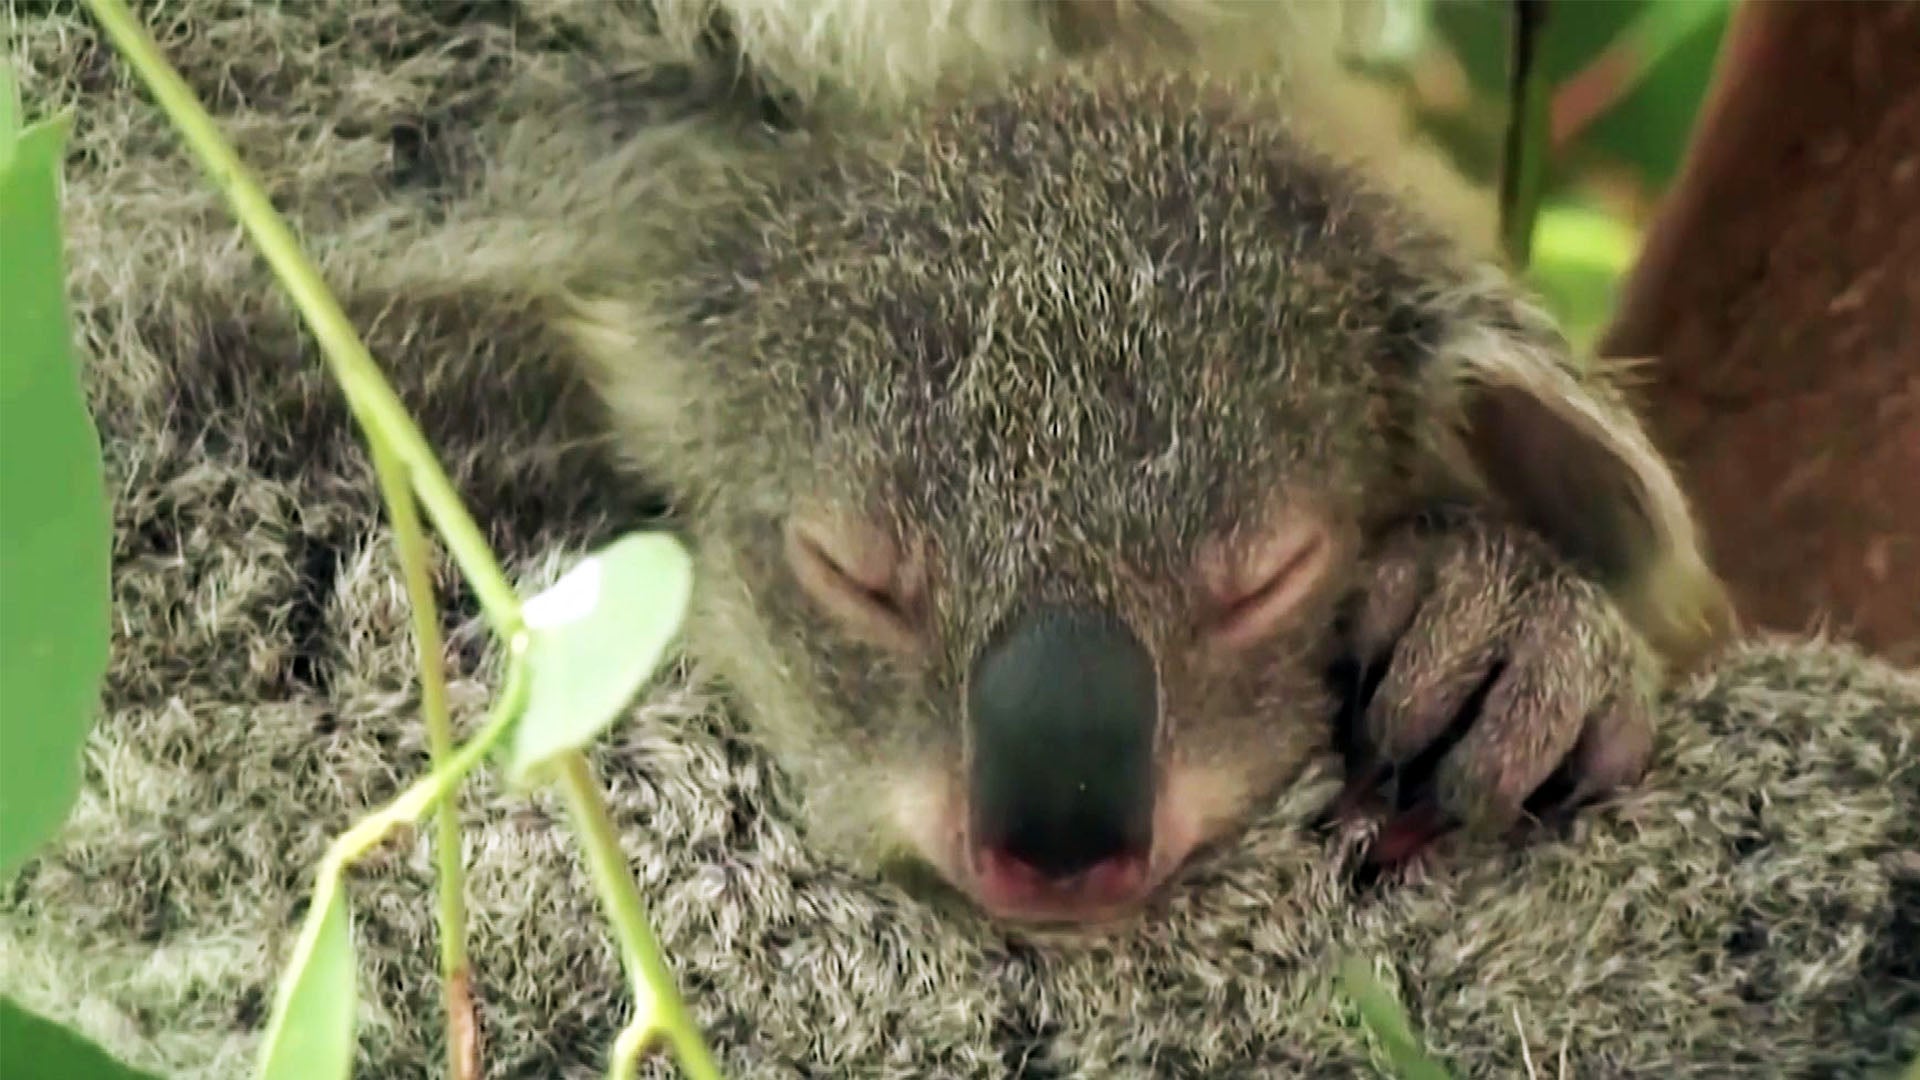 Australia Says Koalas Are Now Endangered